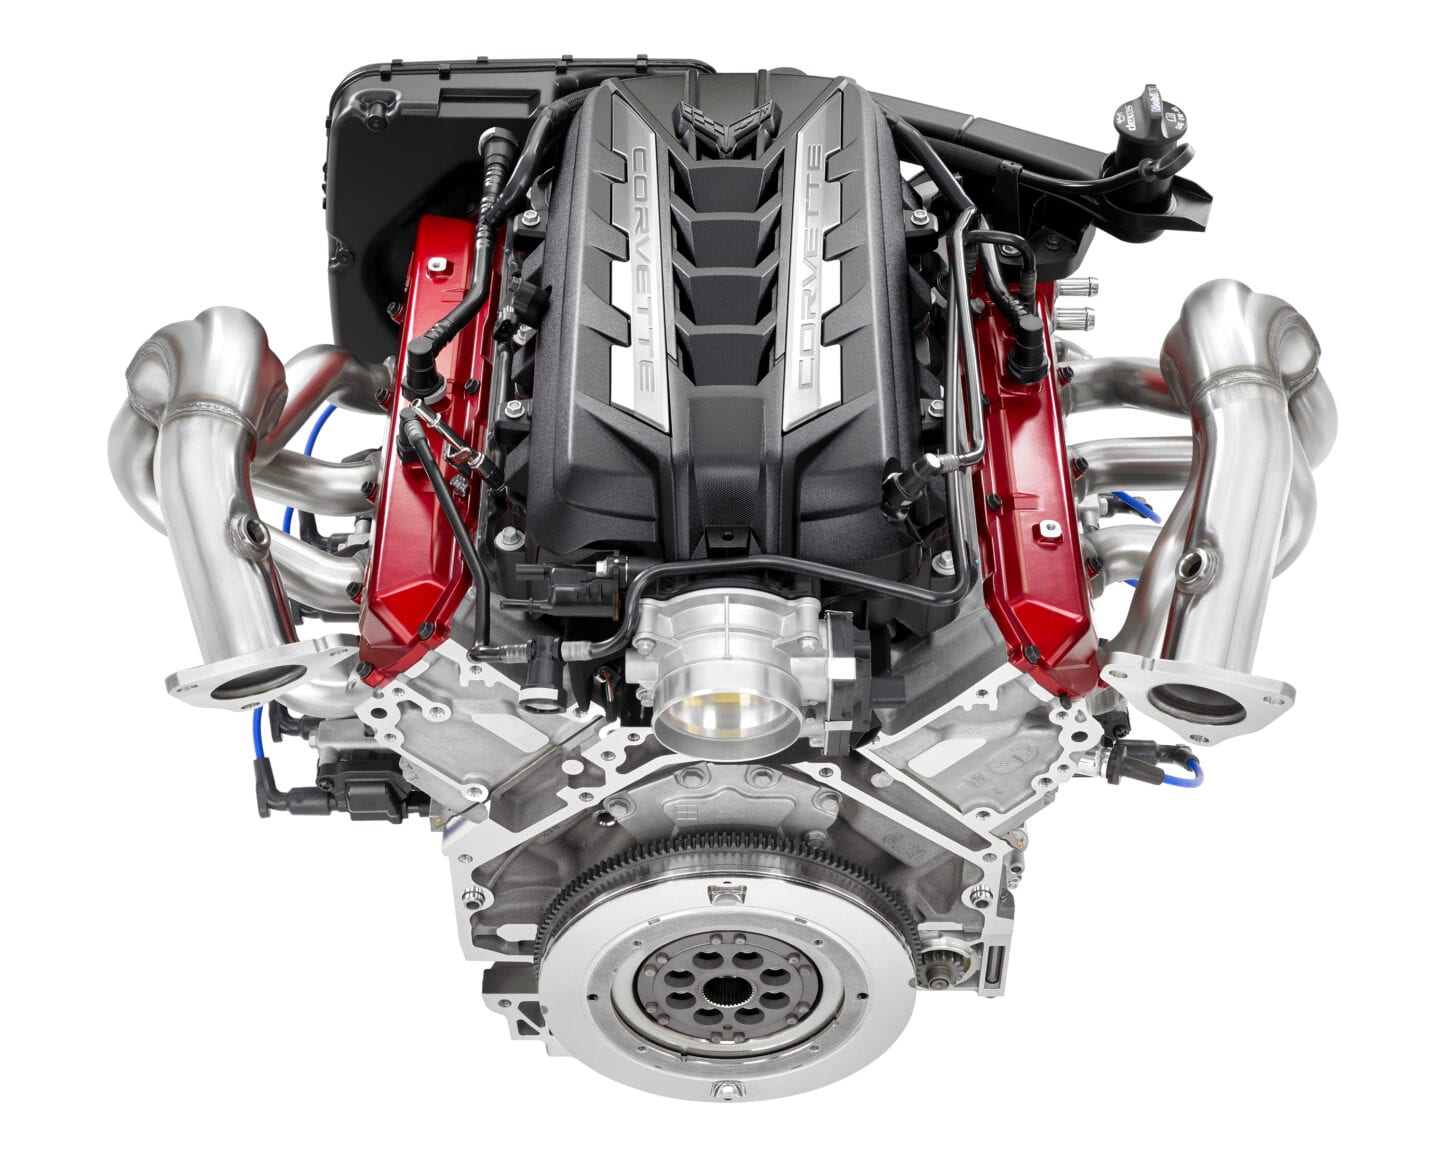 2020 Chevrolet Corvette LT2 Engine 001 1446x1157 